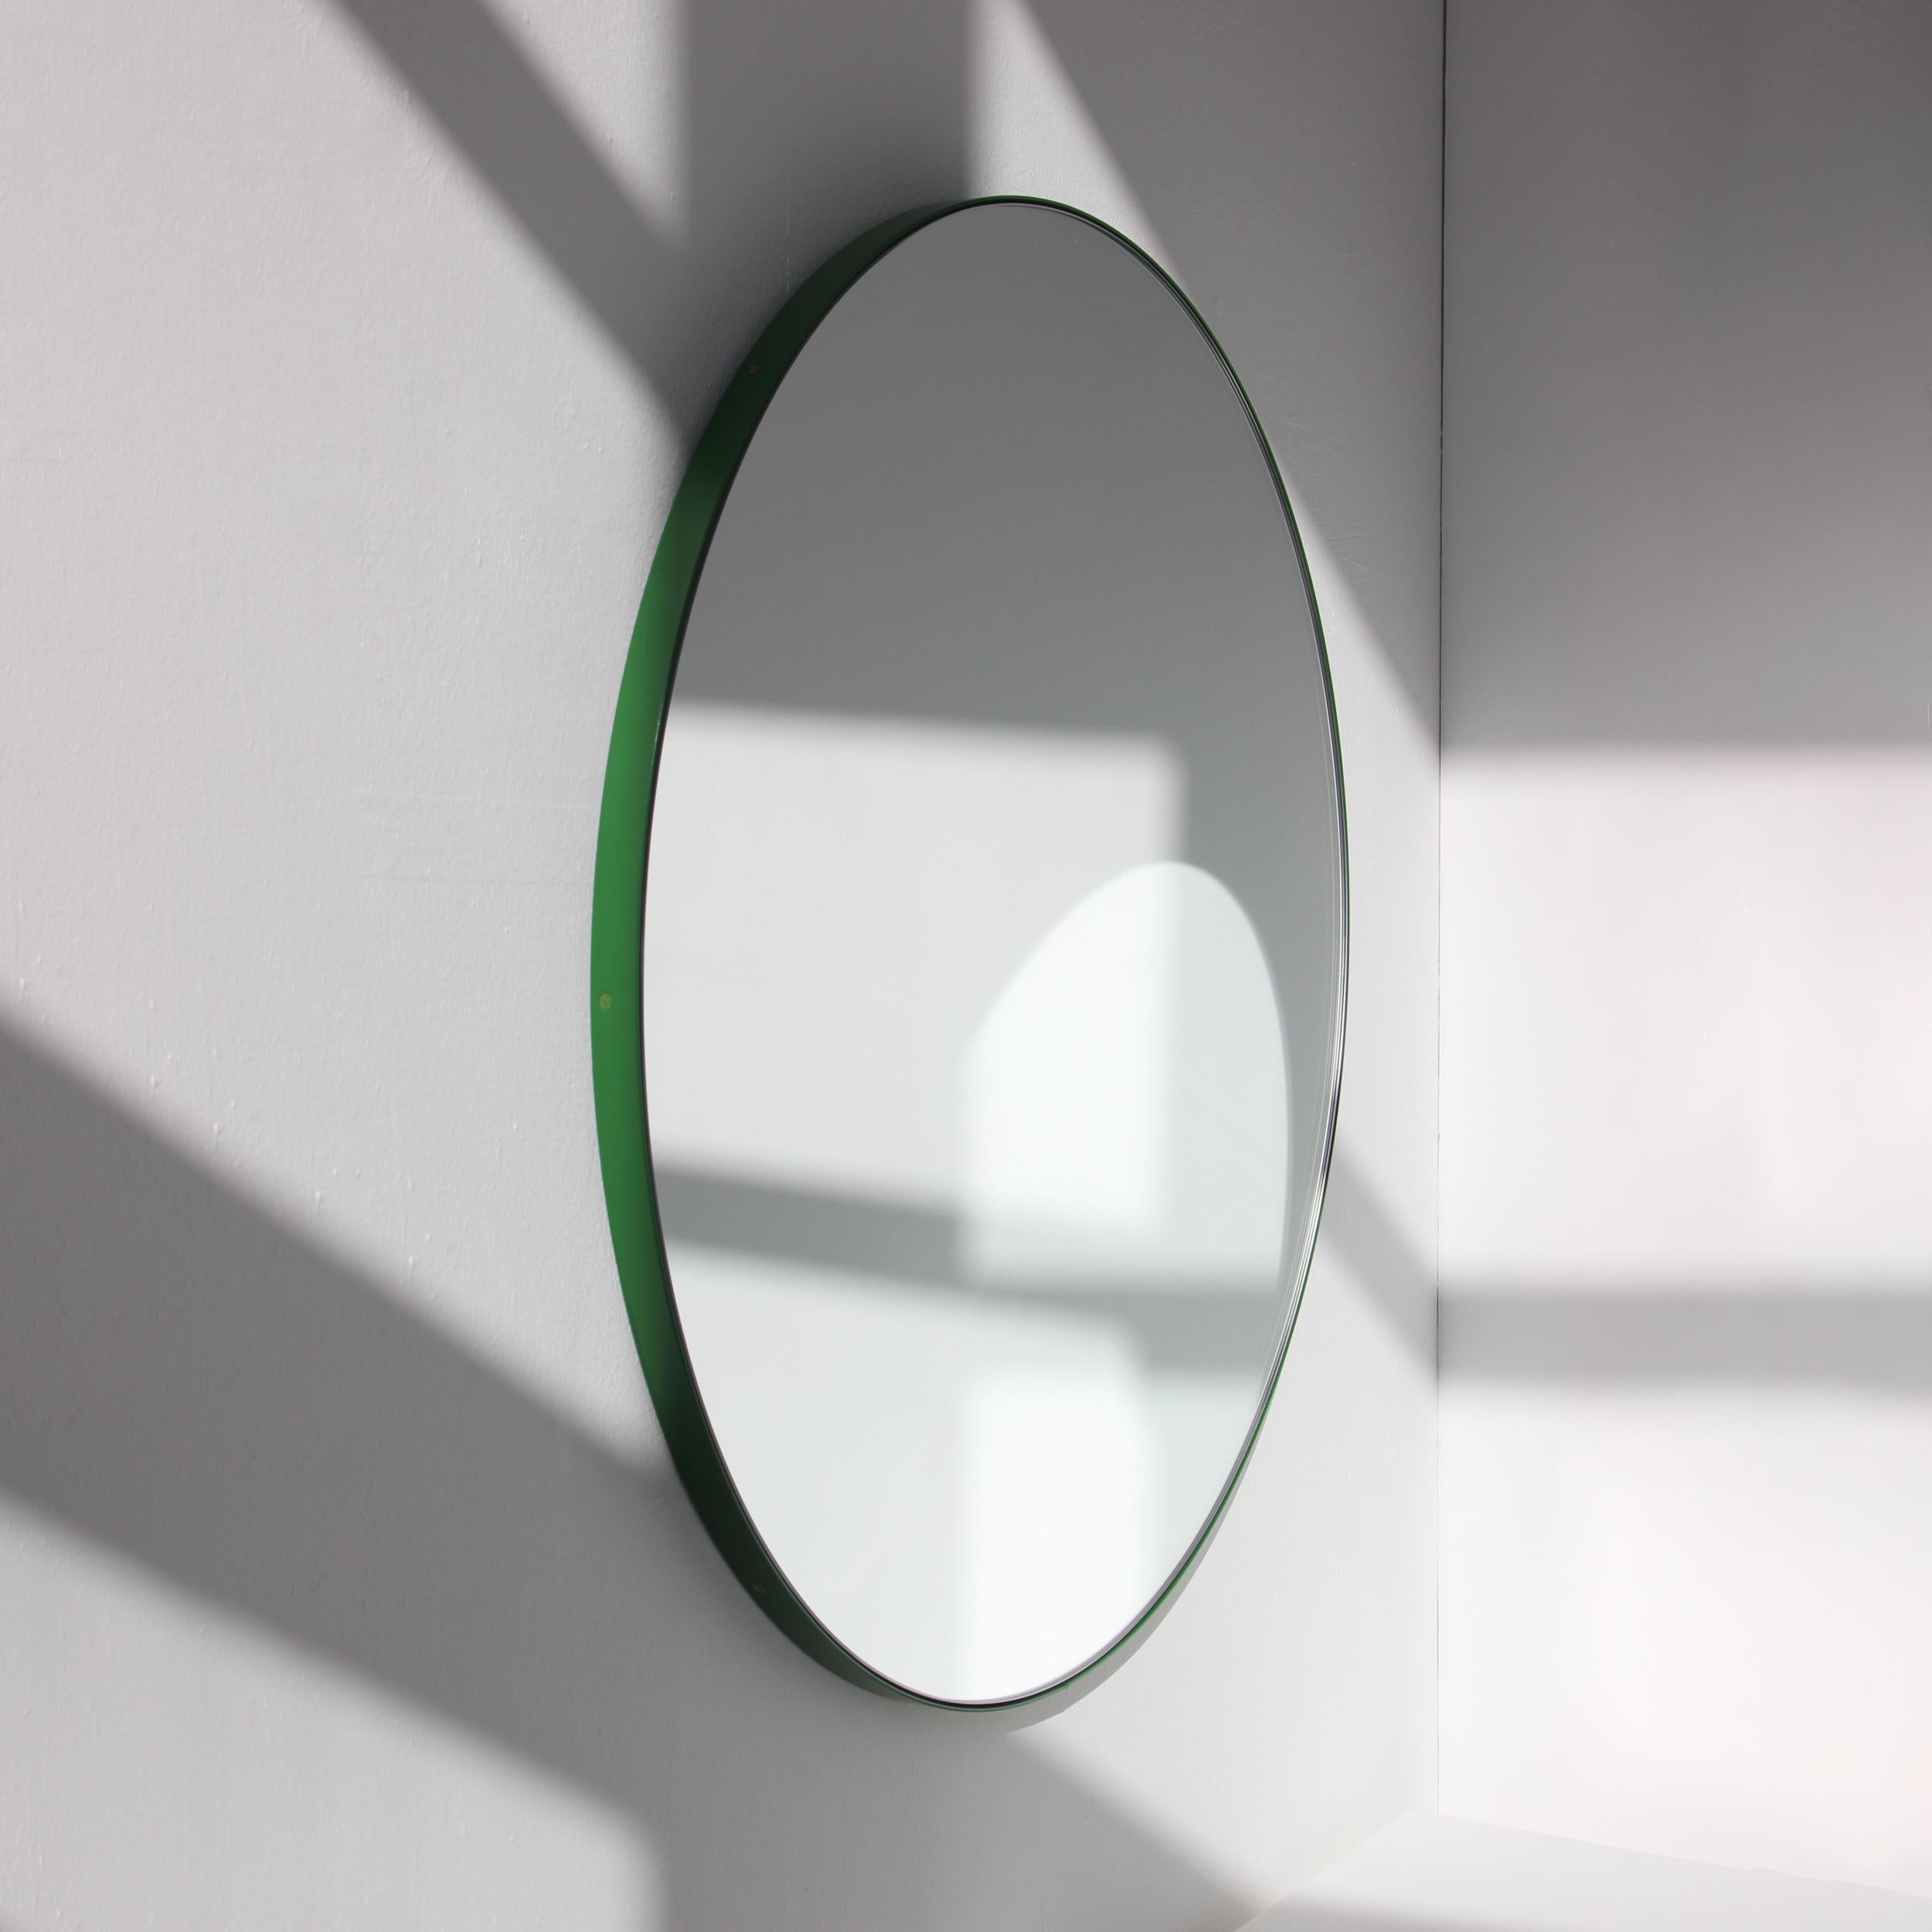 Miroir rond minimaliste avec un cadre vert vif en aluminium peint par poudrage. Conçu et fabriqué à la main à Londres, au Royaume-Uni.

Les miroirs de taille moyenne, grande et extra-large (60, 80 et 100 cm) sont équipés d'un ingénieux système de